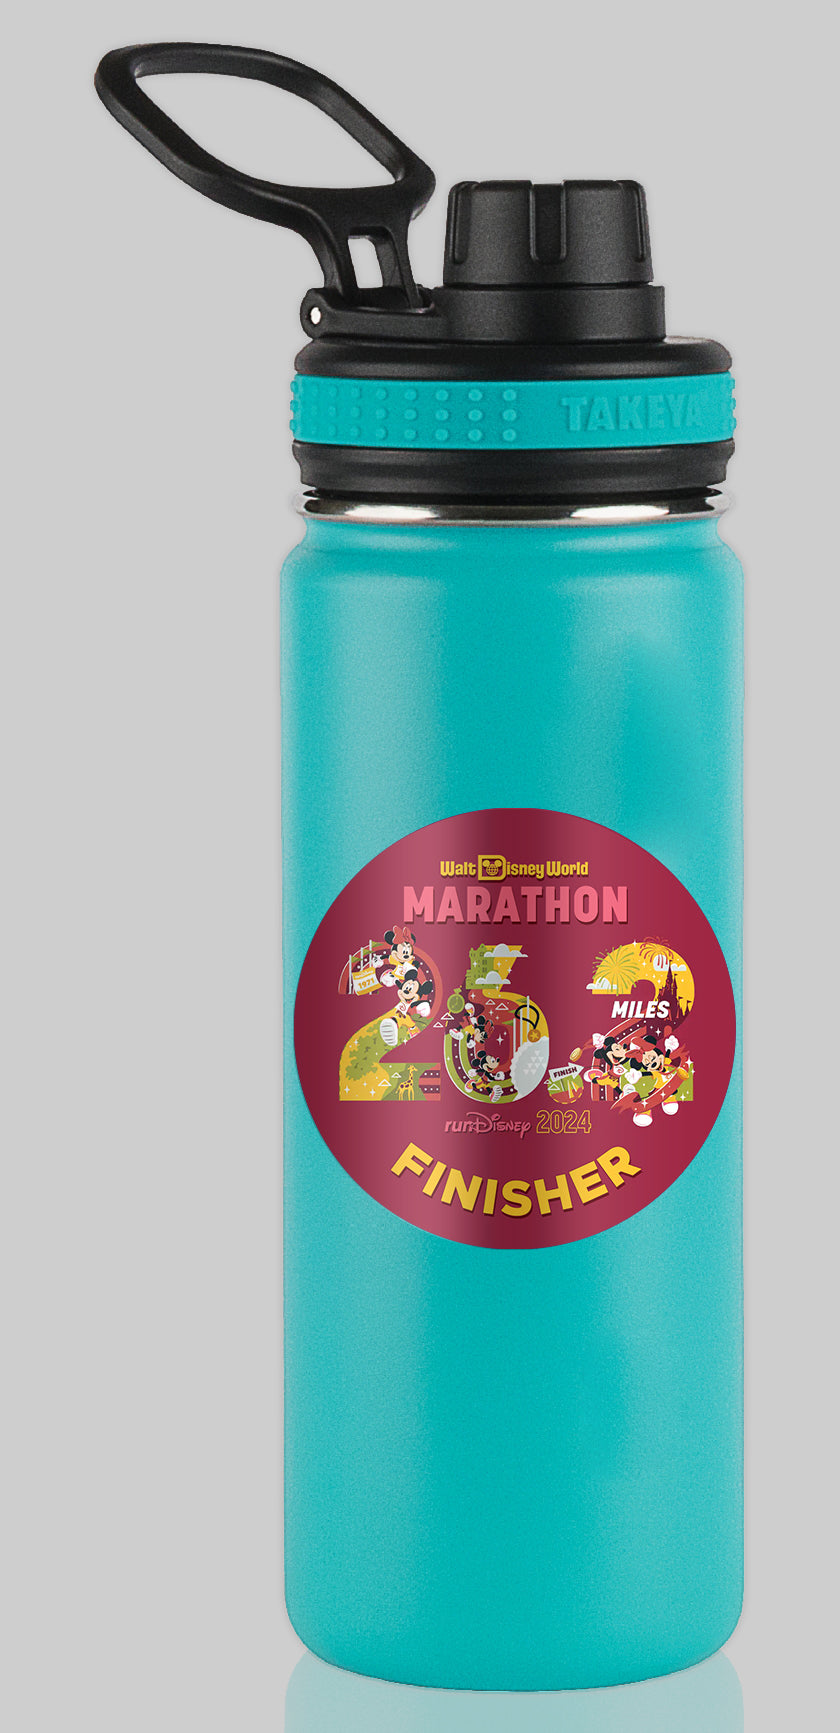 RunDisney Marathon Weekend 2024 Marathon 26.2 Miles FINISHER Water Bottle Mug Sticker